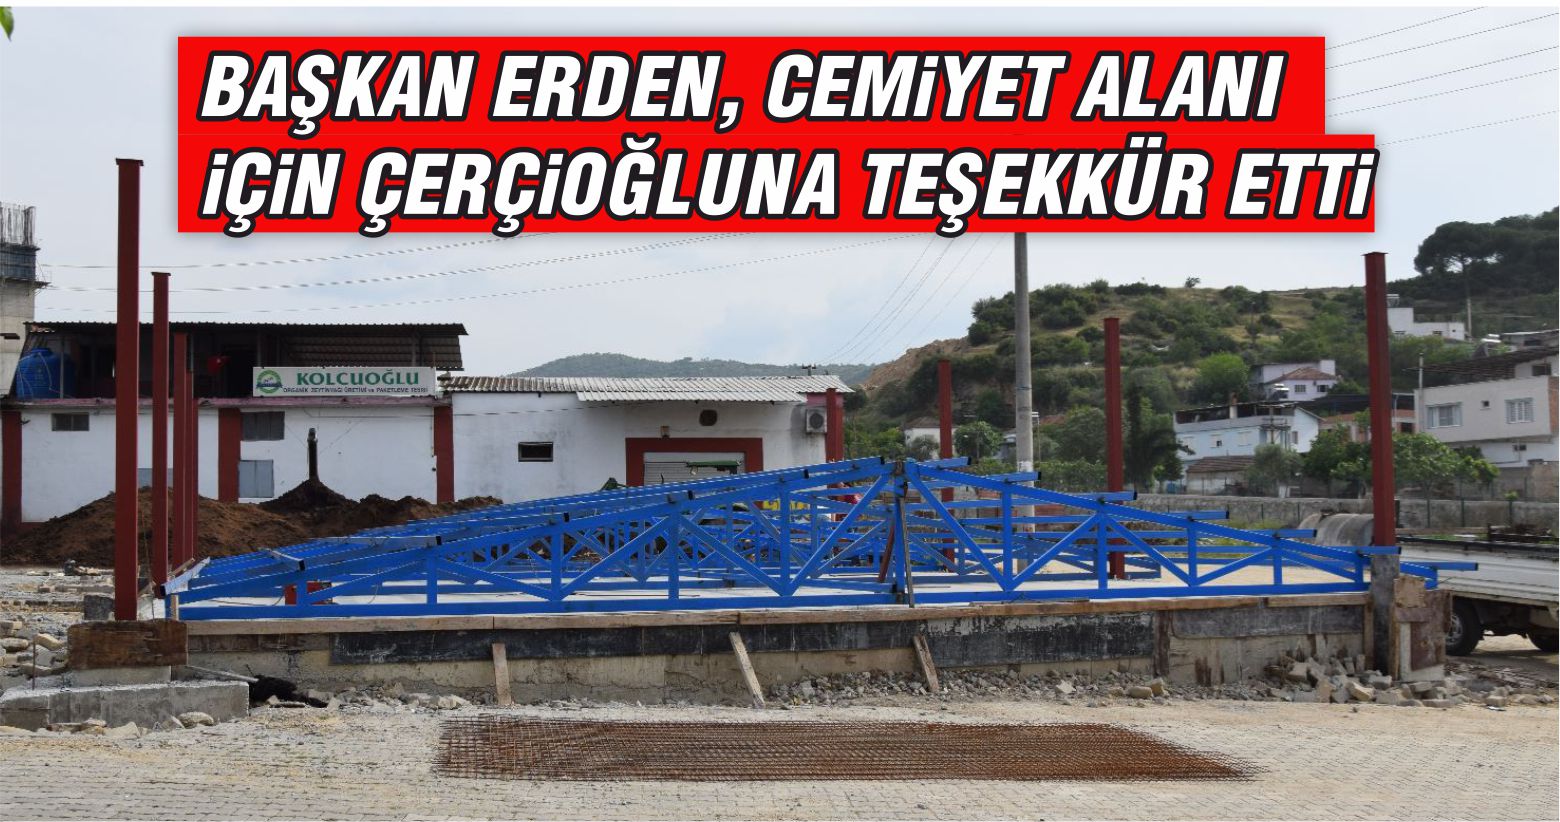 Başkan Erden, Cemiyet alanı için Çerçioğlu’na teşekkür etti